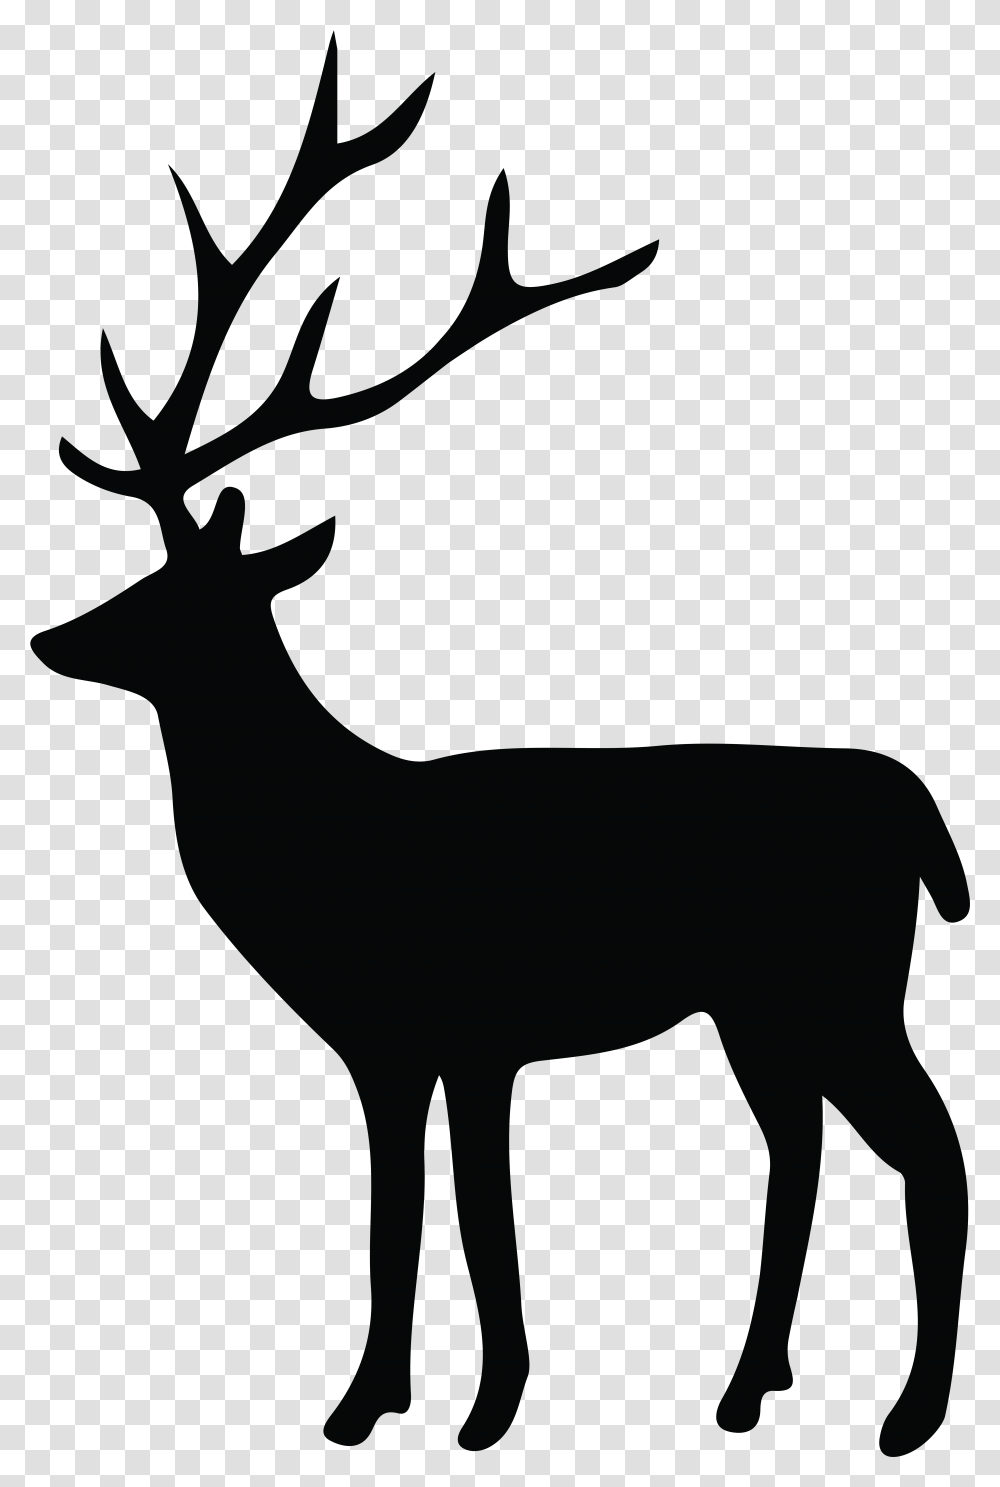 Deer Silhouette Clip Art Image Deer Silhouette, Wildlife, Mammal, Animal, Elk Transparent Png